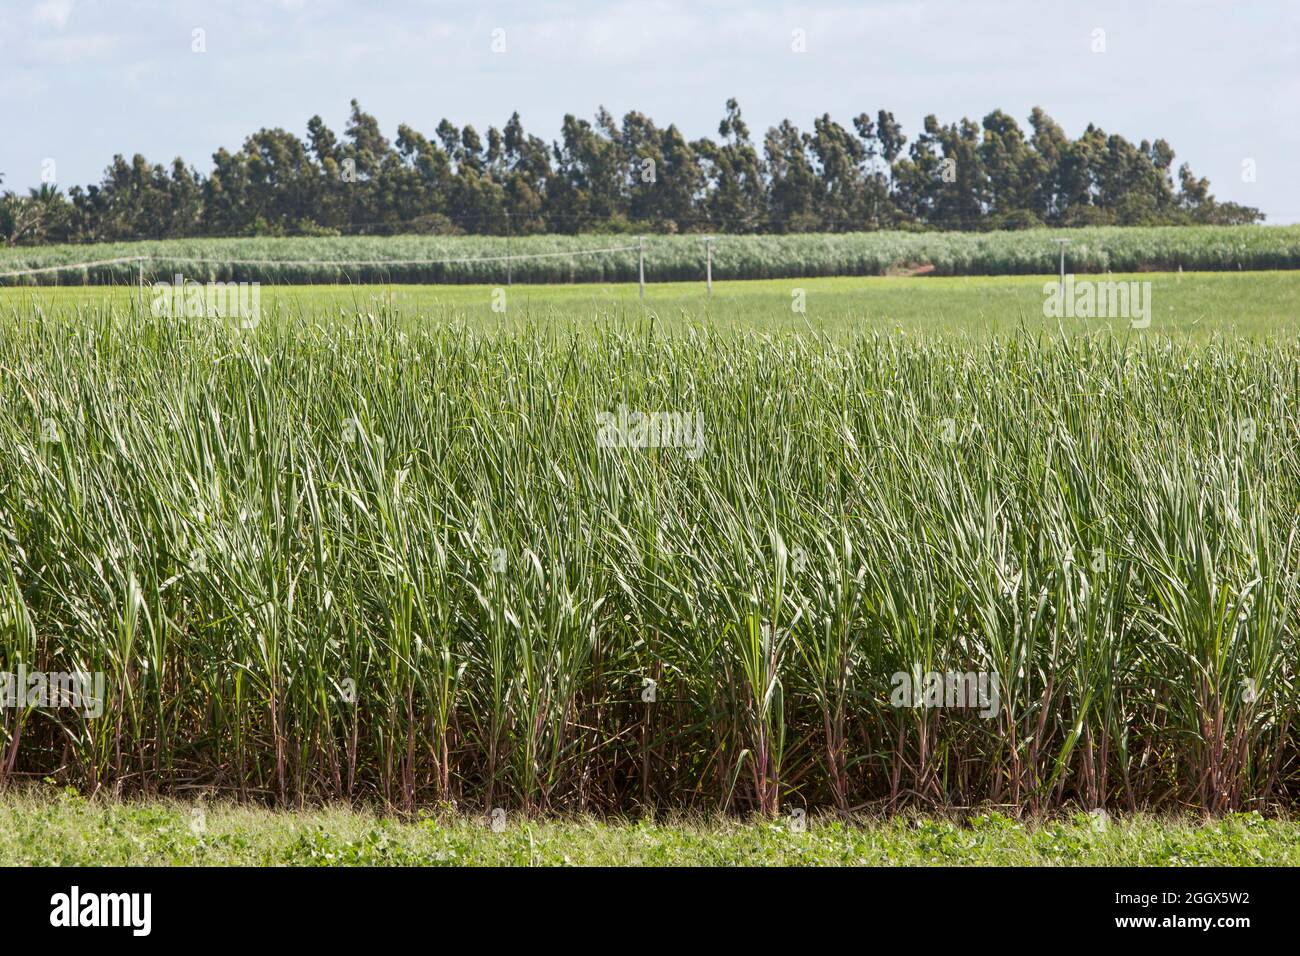 Sugarcane plantation. Stock Photo